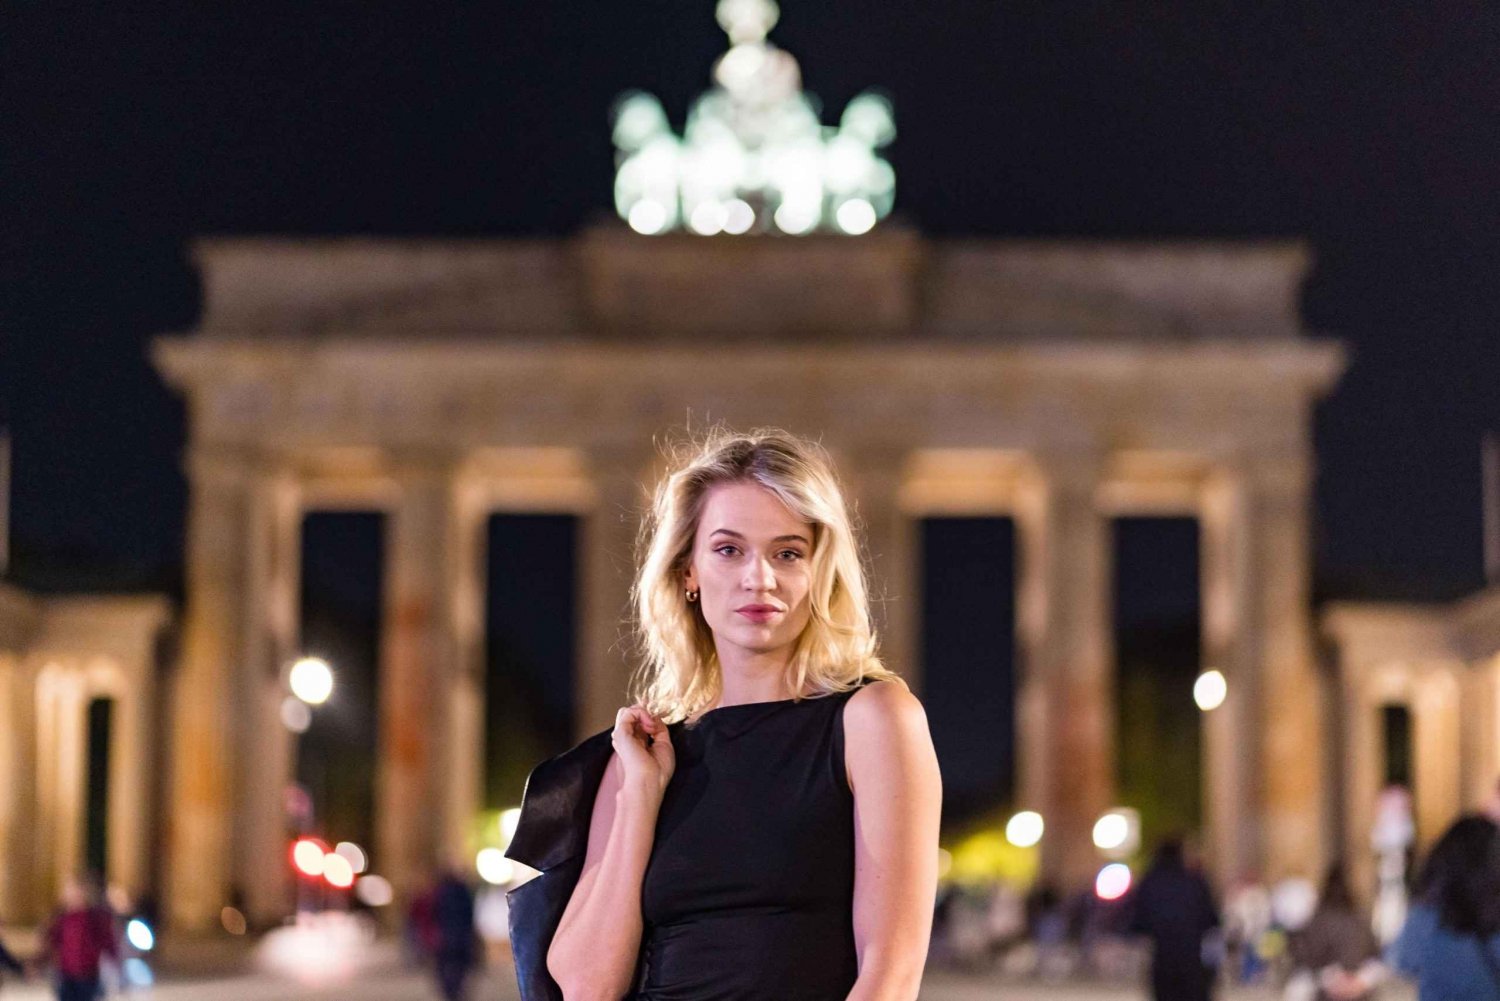 Berlin om natten: Privat fotoshoot på Illuminated Cityscape